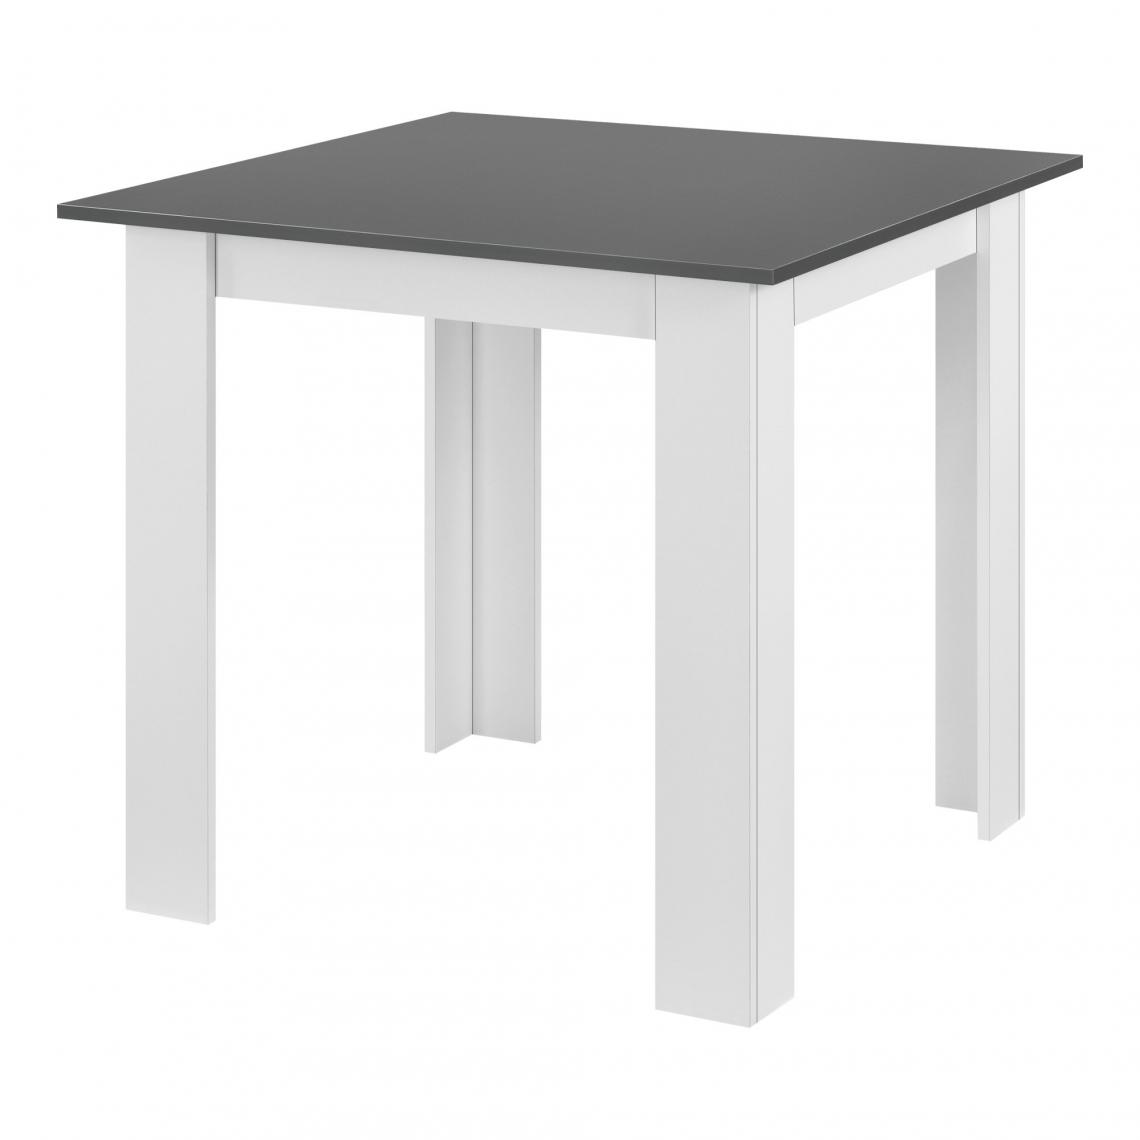 Helloshop26 - Table carrée pour 4 personnes salle à manger cuisine salon 80 cm blanc gris 03_0006233 - Tables à manger